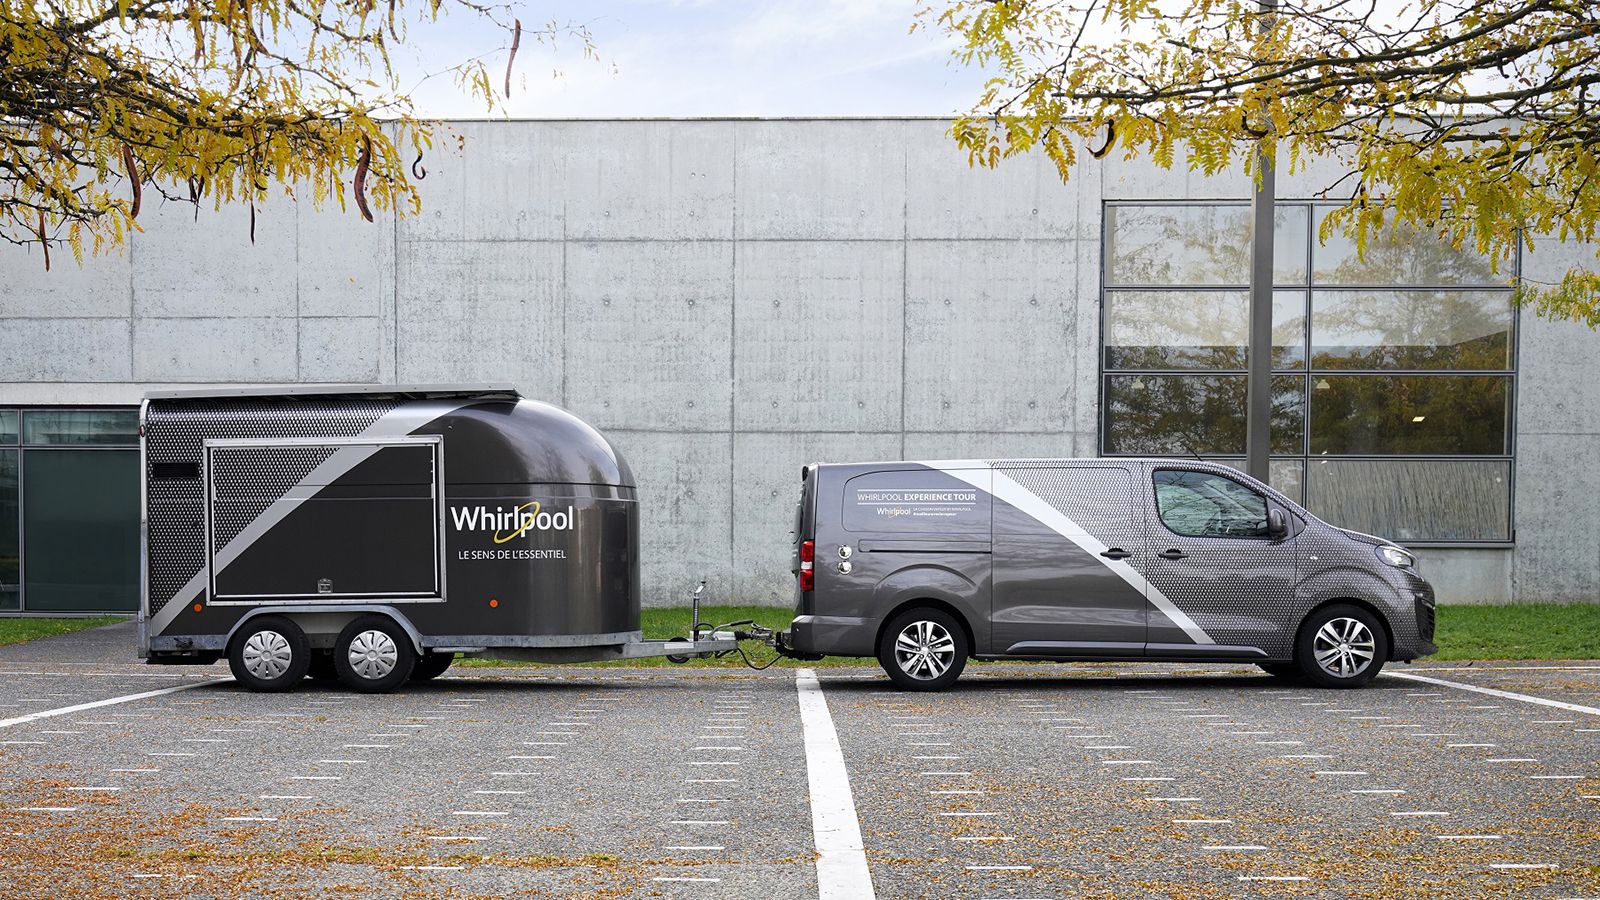 Το Whirlpool Experience Tour που στηρίζεται στην έκδοση «Long» του Peugeot Expert μήκους 5,30 μέτρων, έχει κοτσαρισμένο ένα τρέιλερ στο οποίο βρίσκεται ένα ψυγείο και επιπλέον αξεσουάρ.